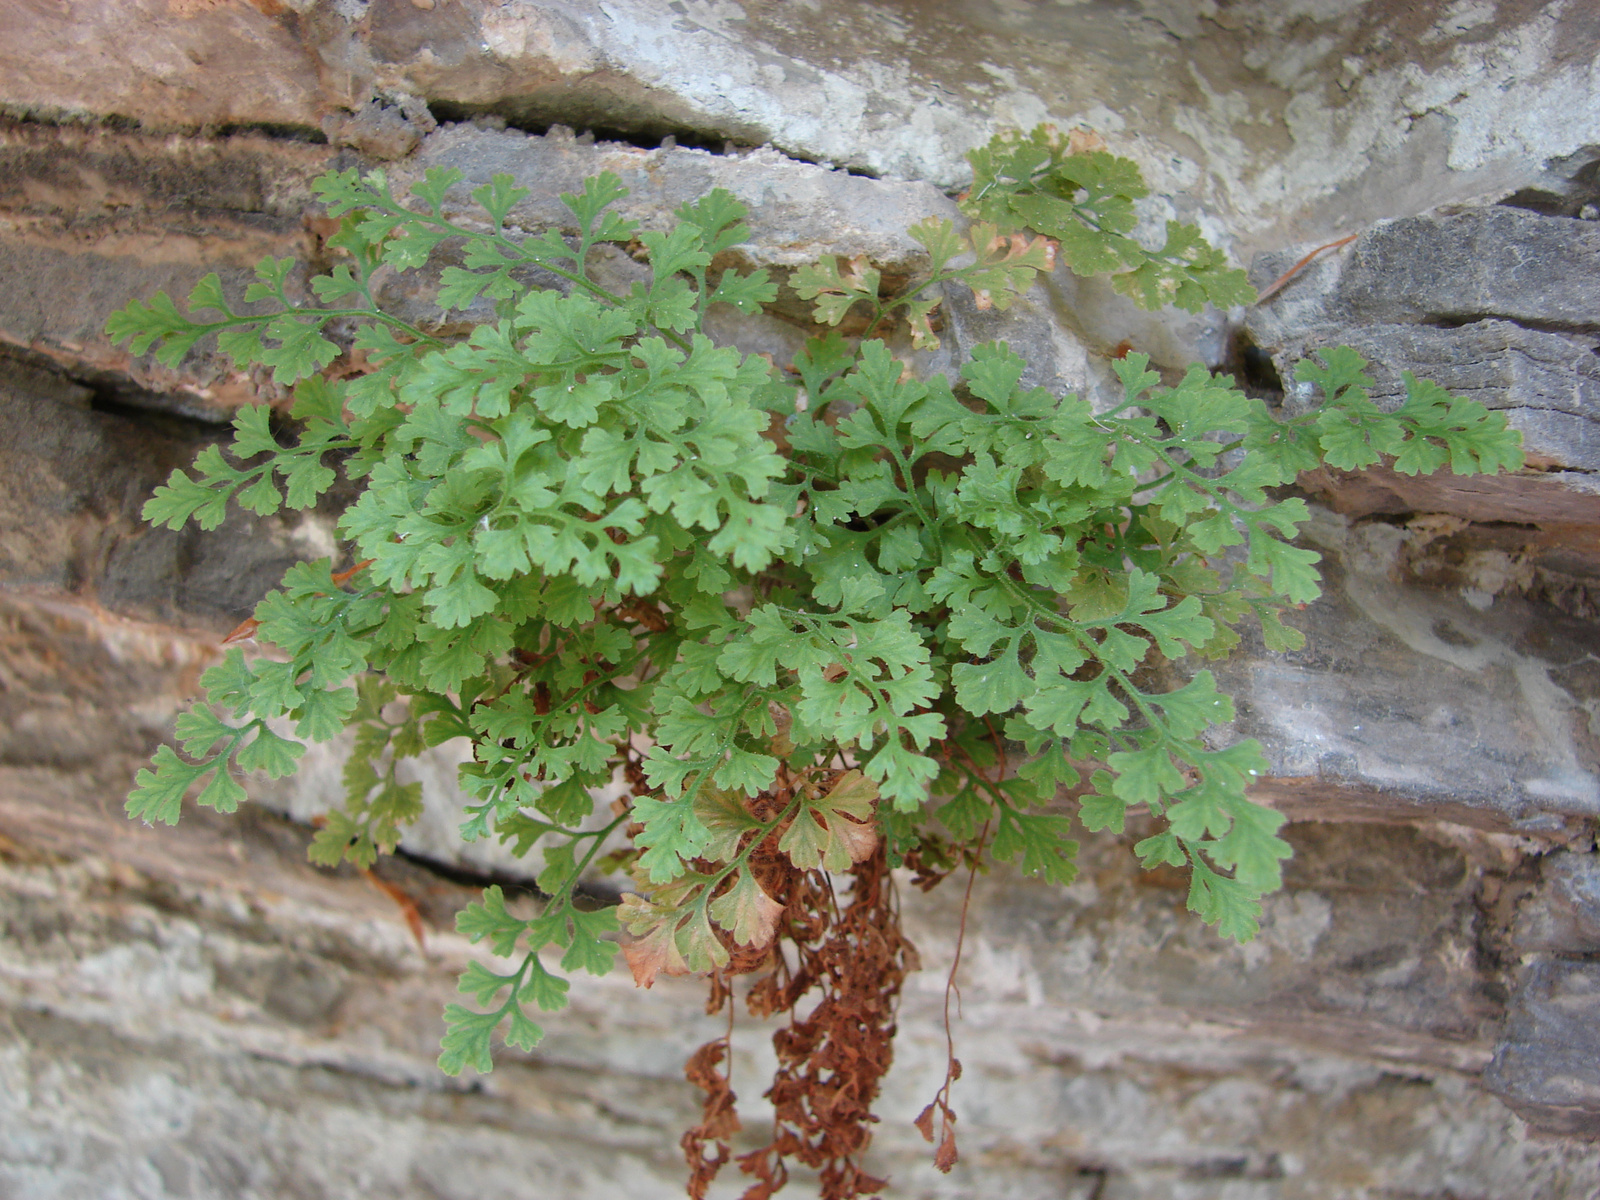 Mirigyes fodorka (Asplenium lepidum)